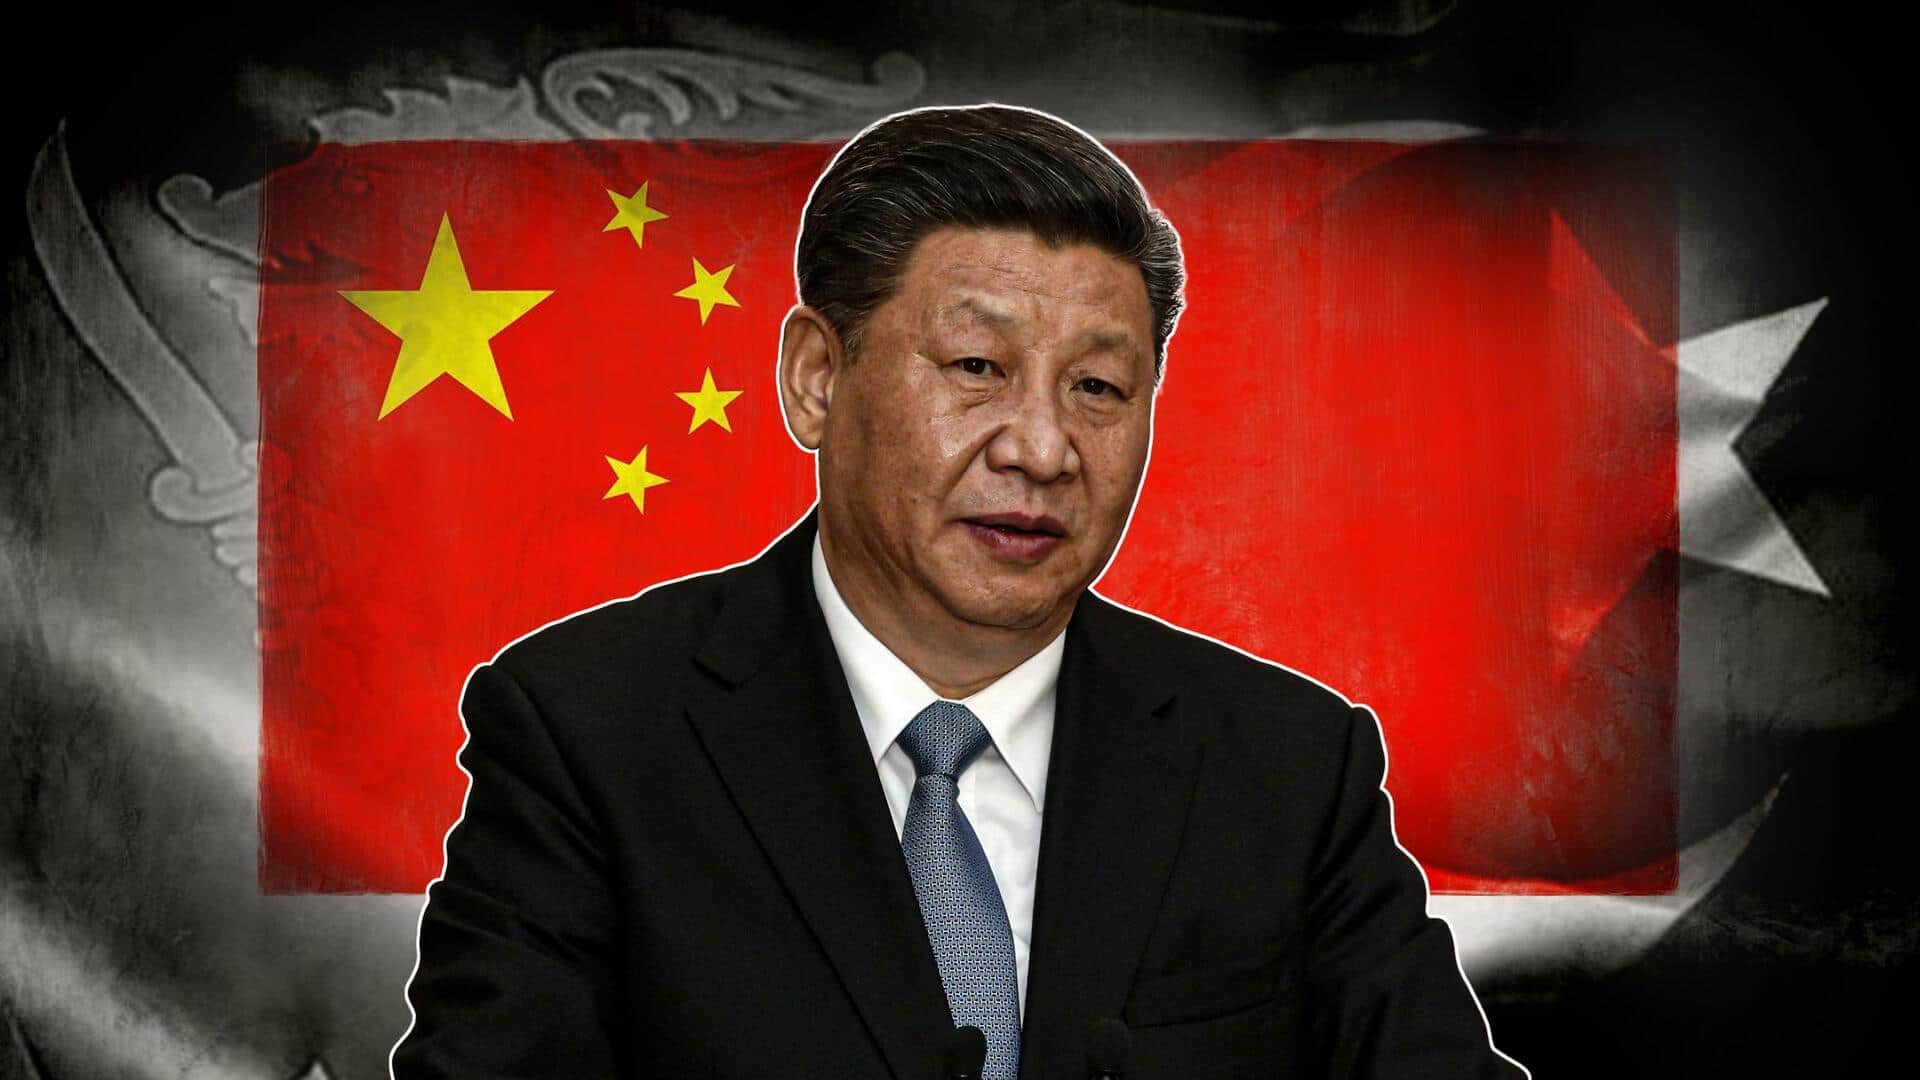 चीन का पाकिस्तान और श्रीलंका को कर्ज देना चिंताजनक, उठा सकता है जबरन फायदा- अमेरिका